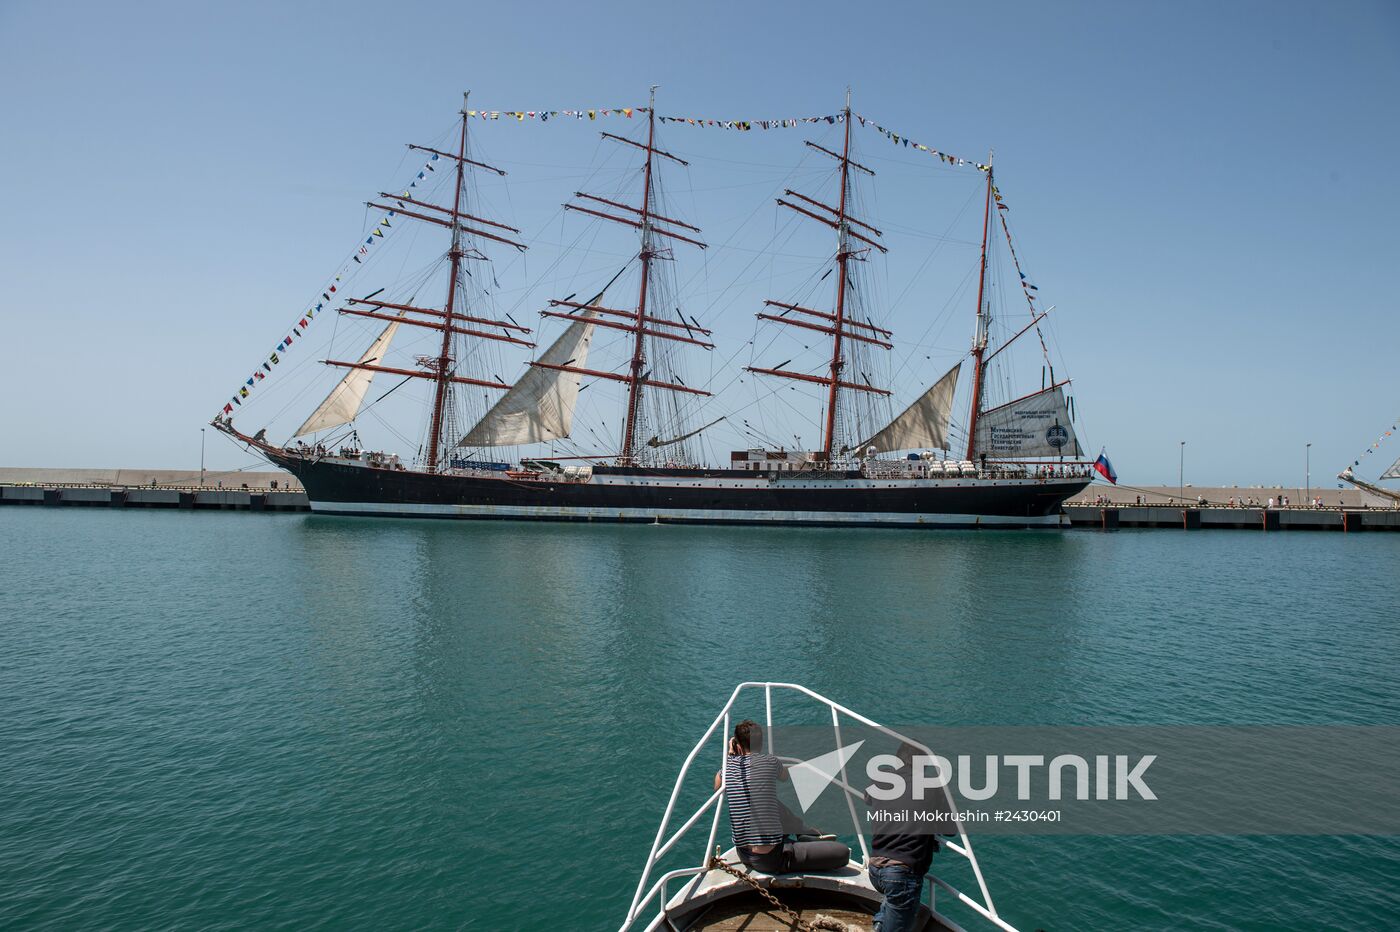 Black Sea tall ships regatta